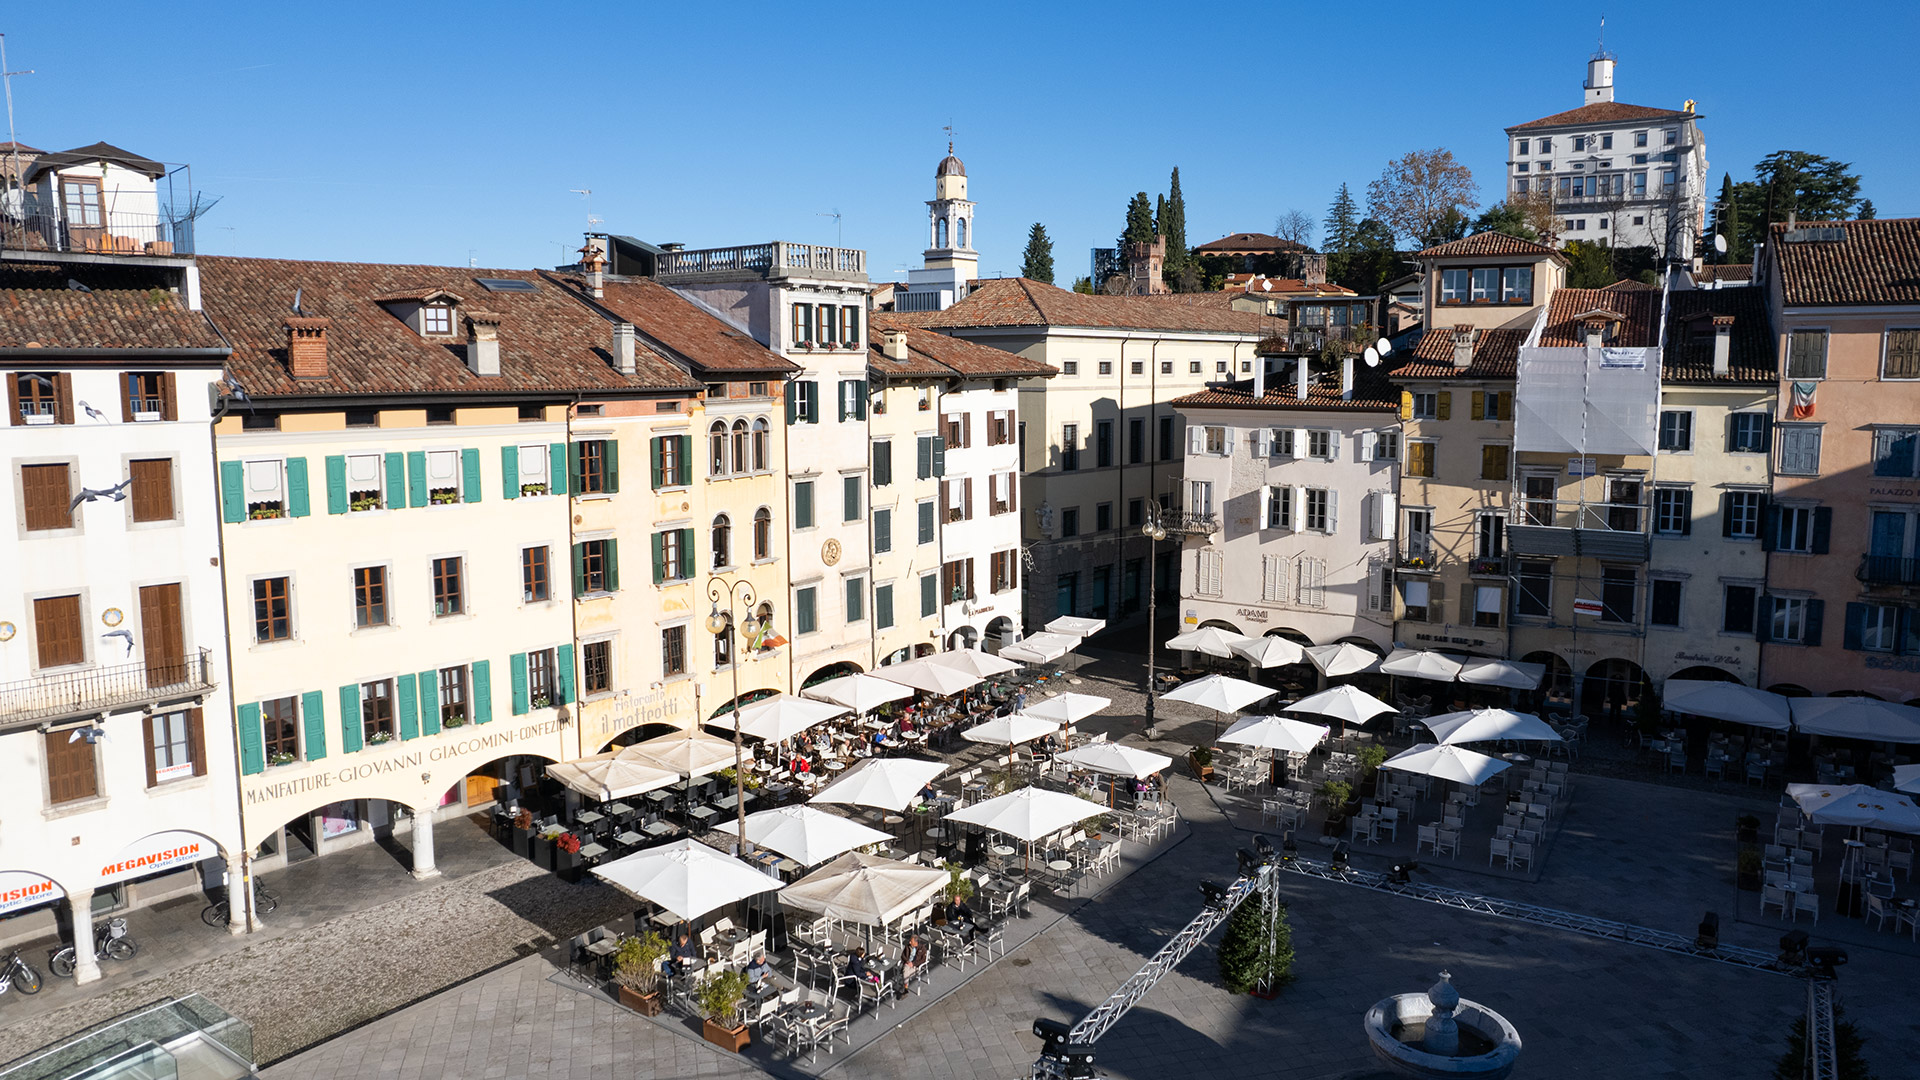 Il nostro Bar Il Matteotti, disposto in una delle piazze più belle di Udine, Piazza San Giacomo, in una giornata di sole invernale.